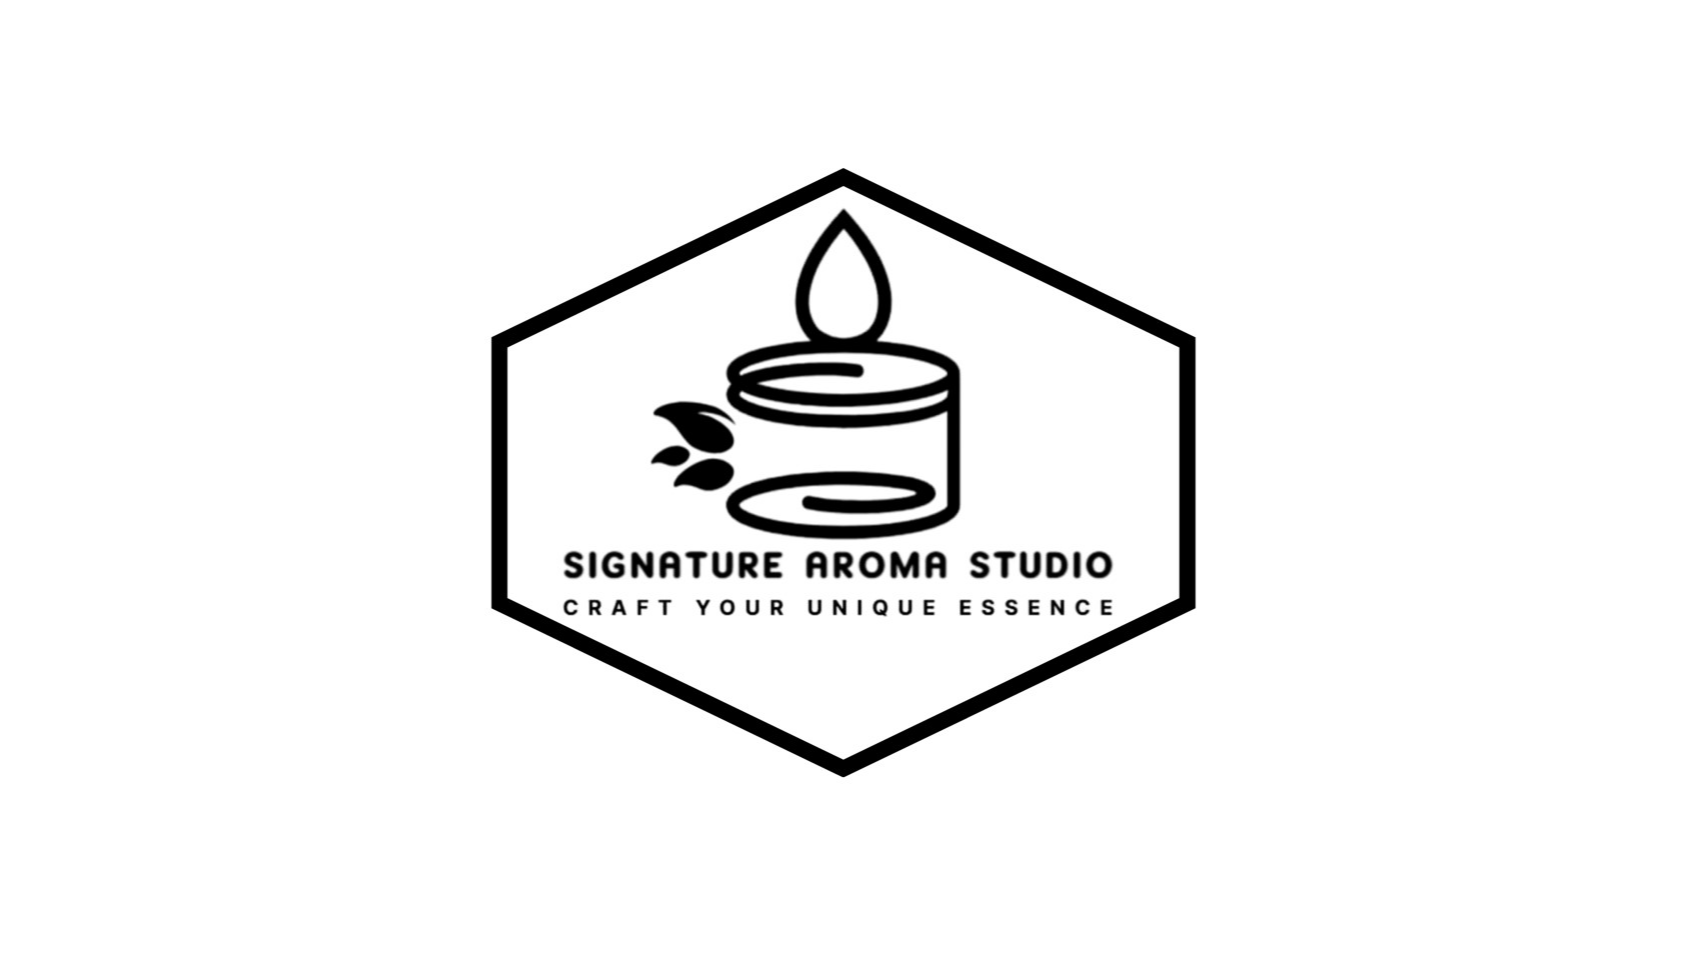 Images Signature Aroma Studio